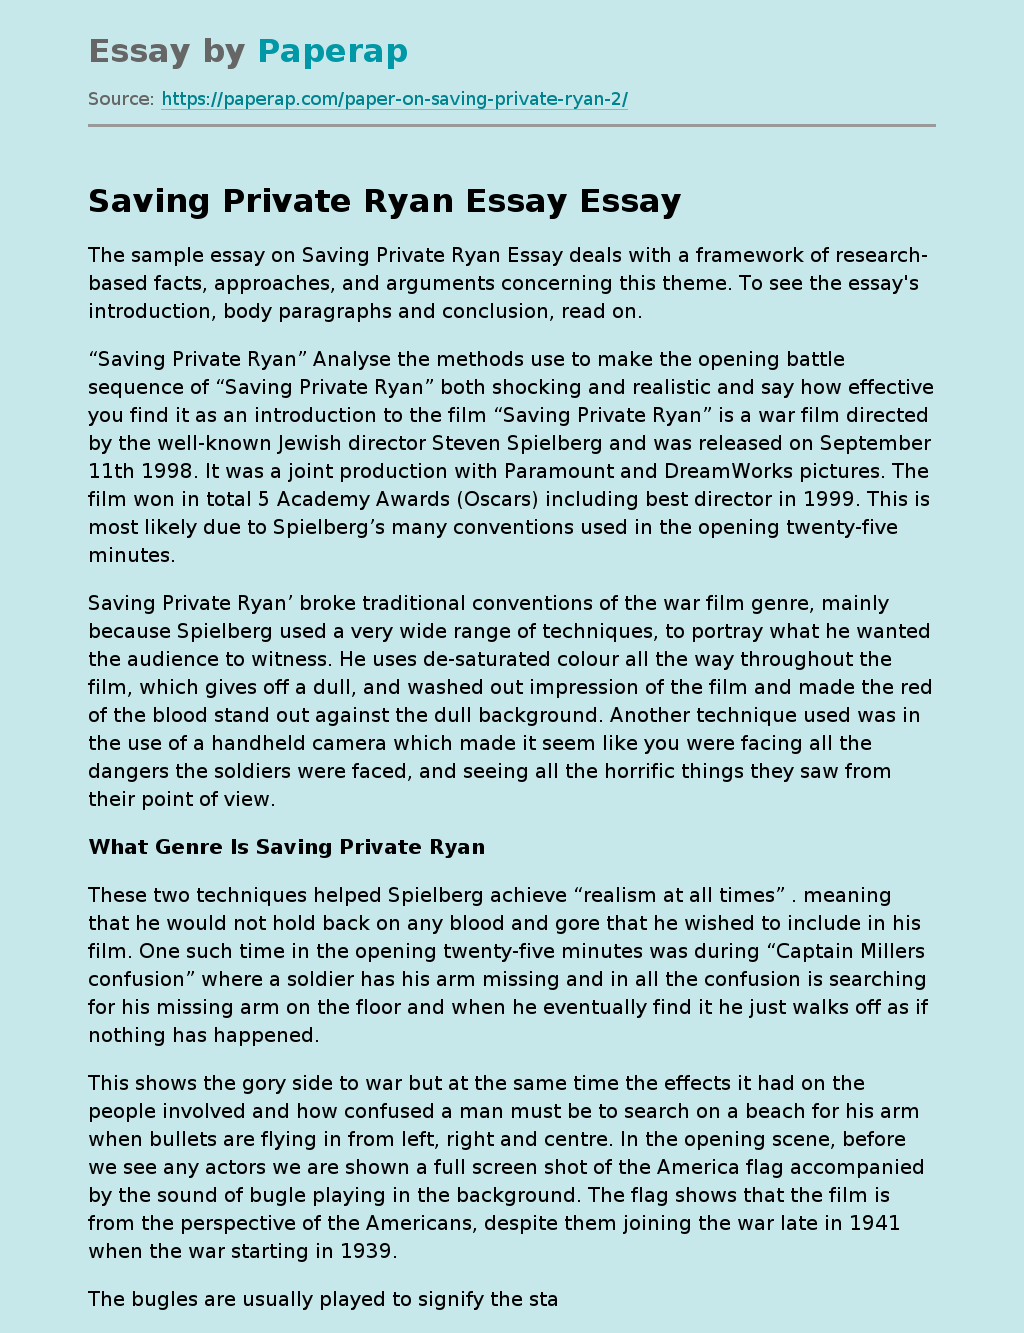 Saving Private Ryan Essay